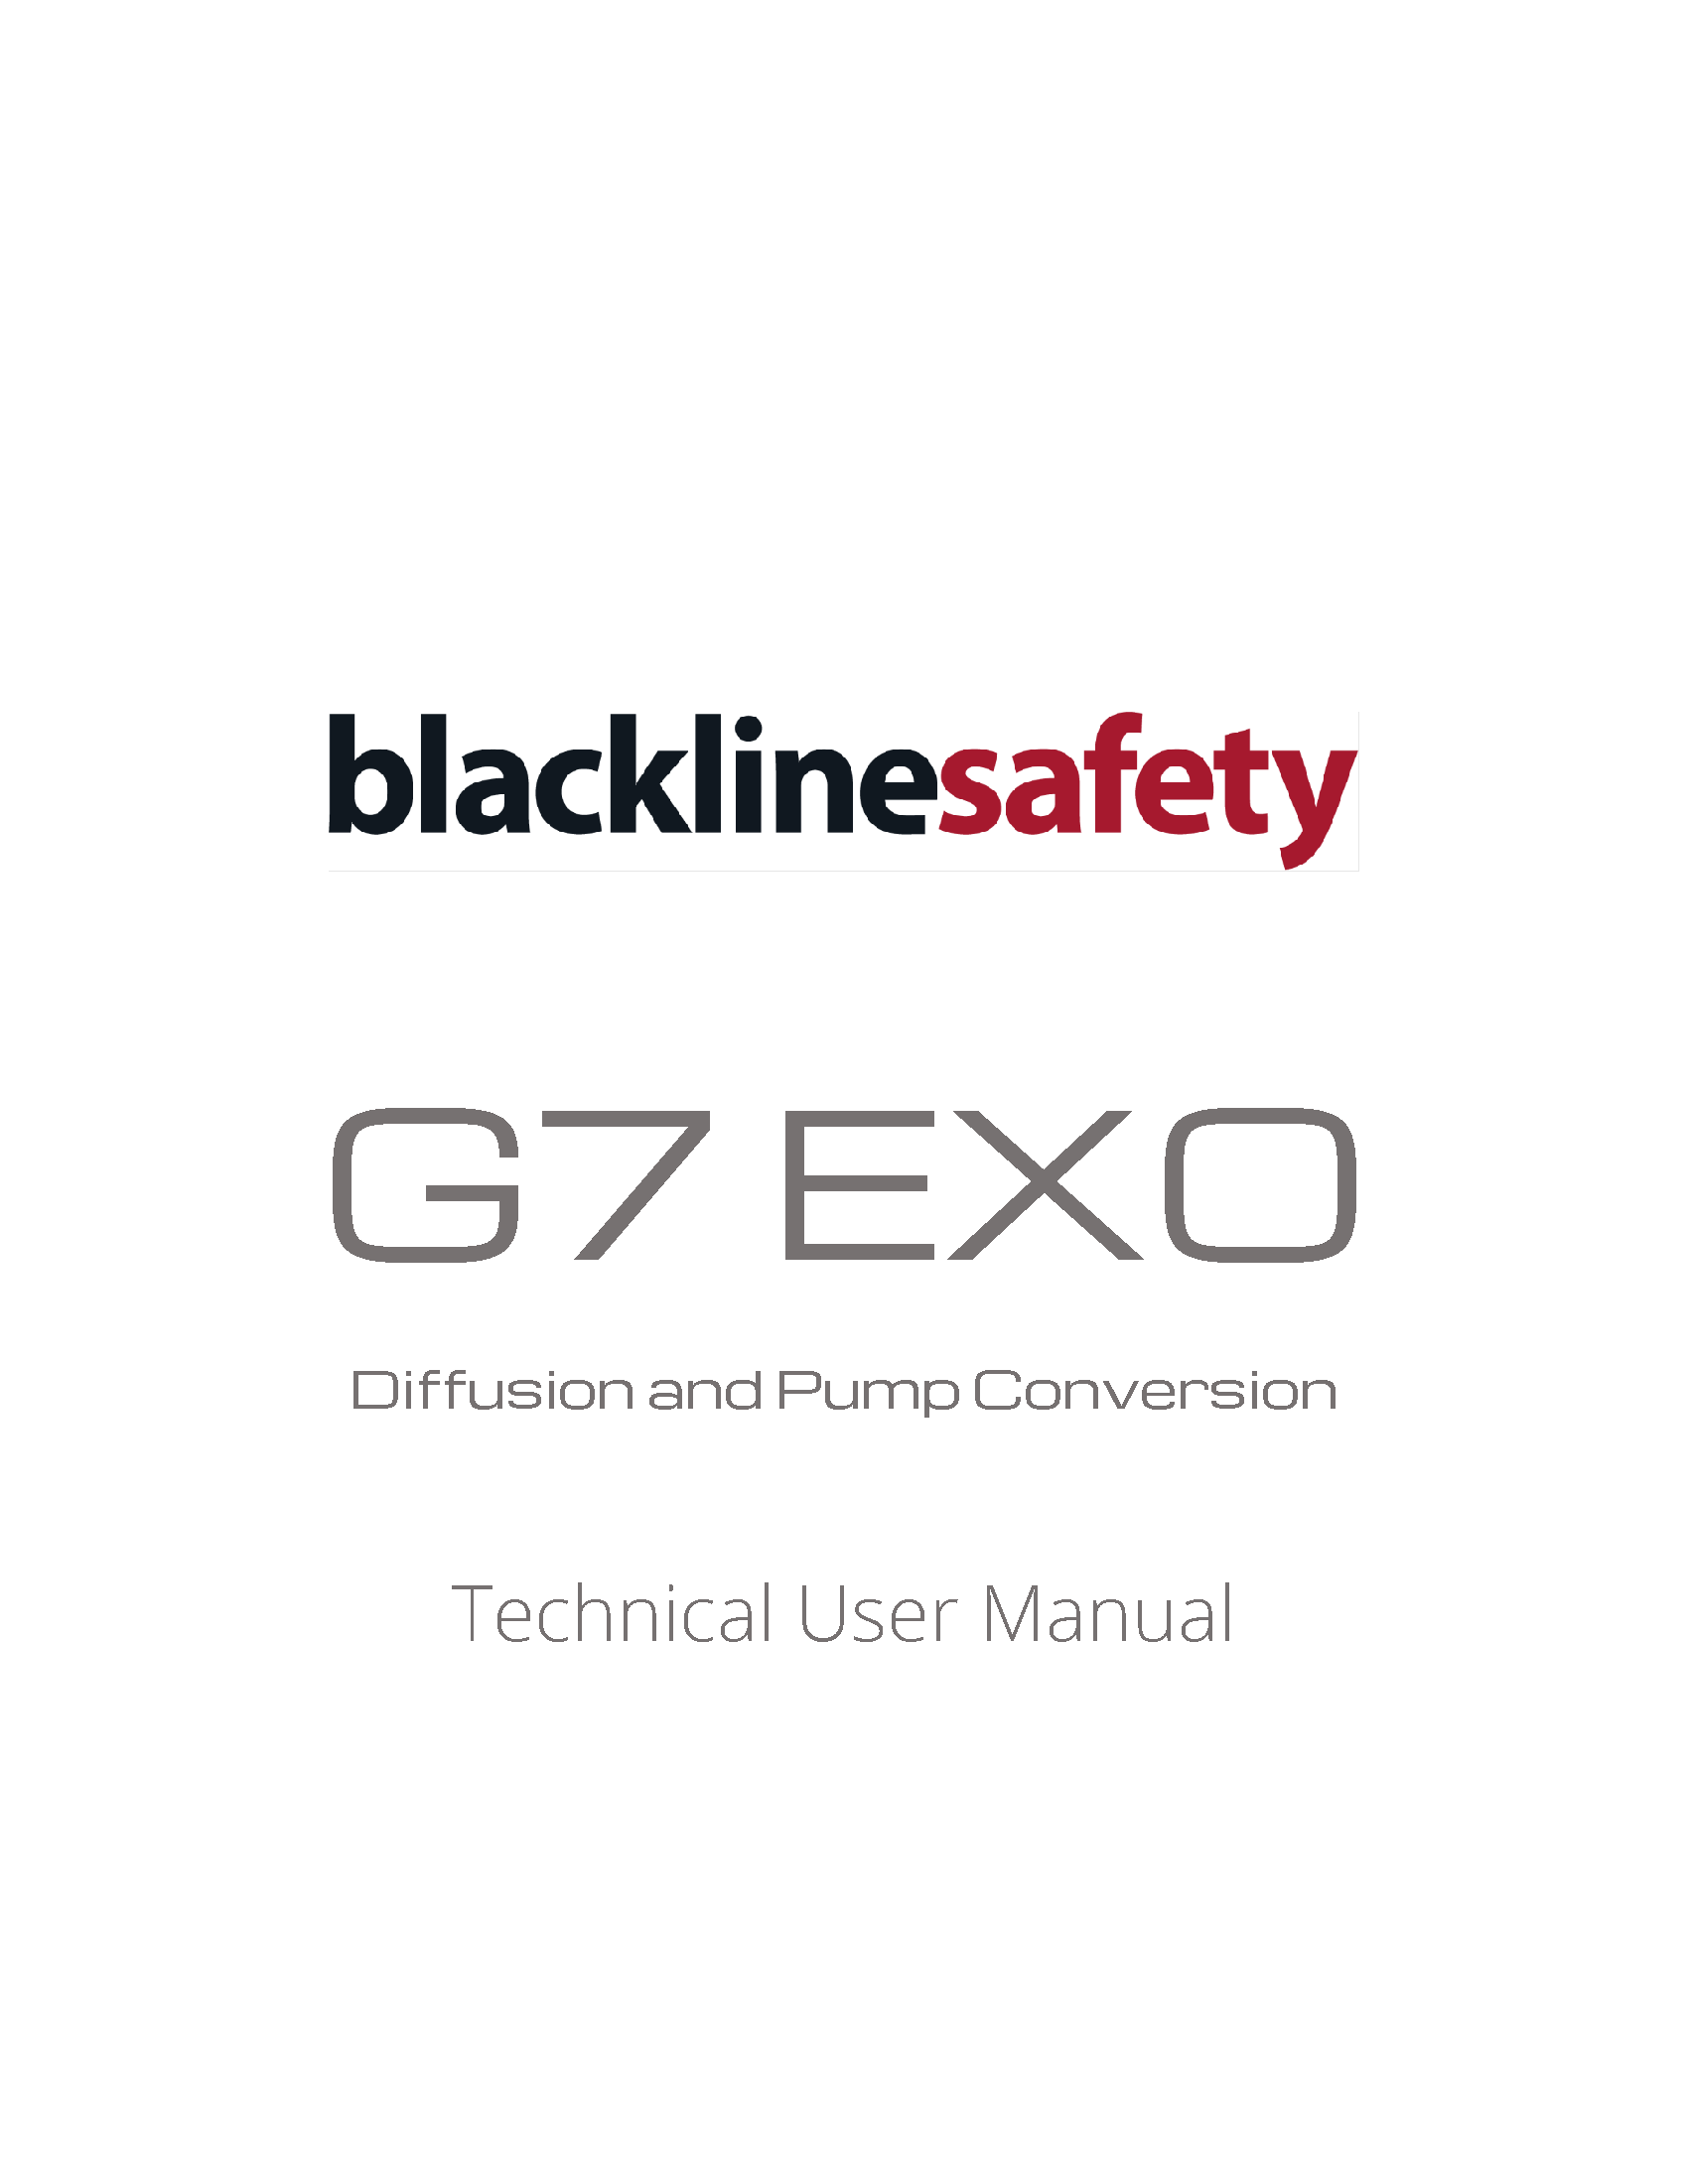 G7 EXO Pompa e Diffusione Conversione Manuale Tecnico d'Uso Copertina